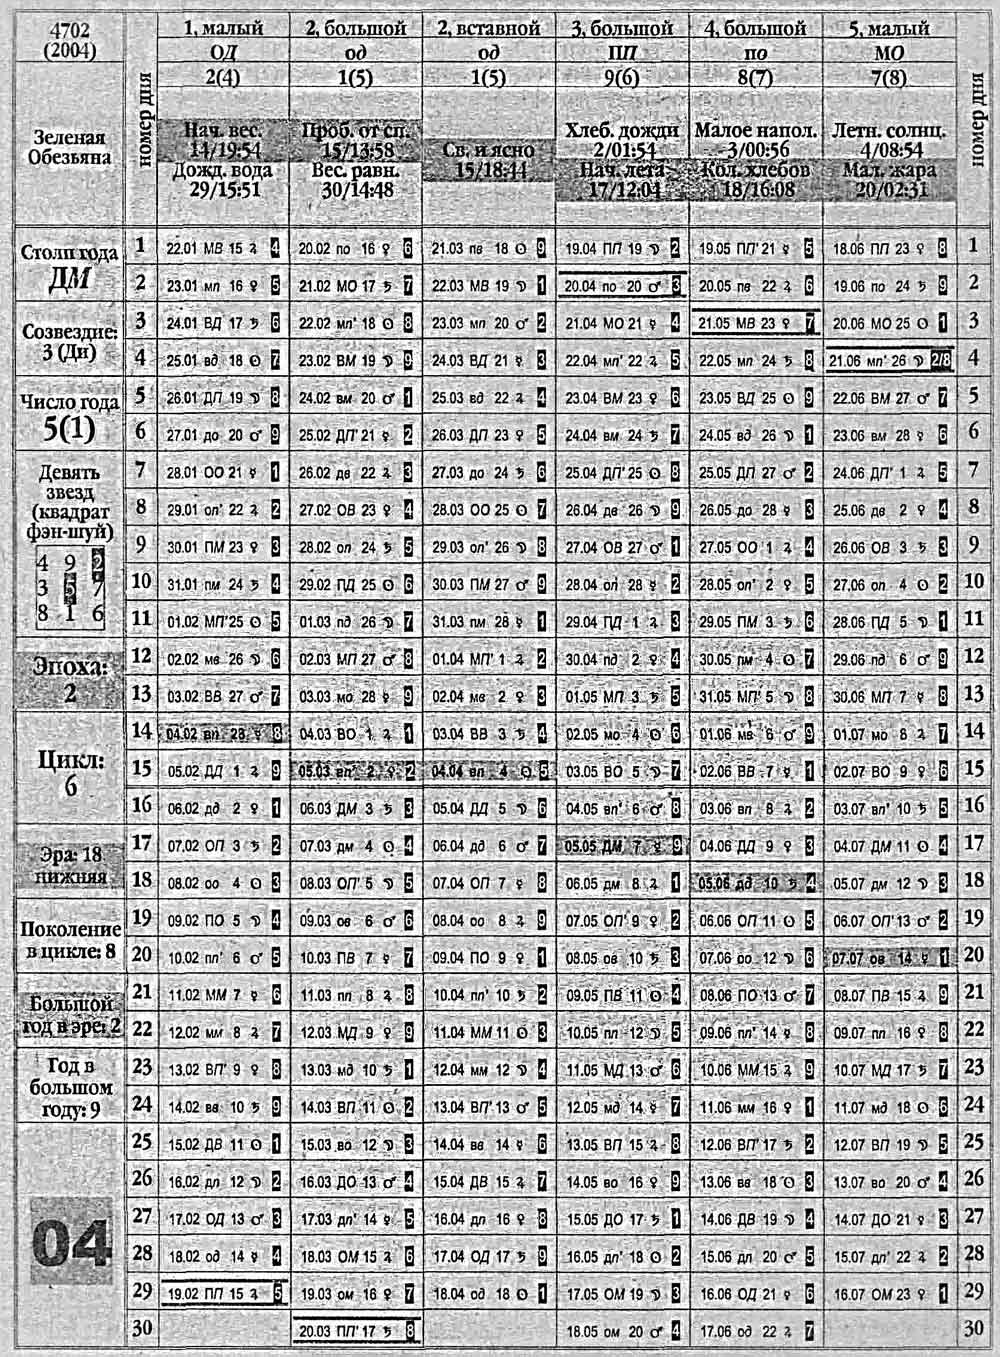 Китайский календарь 2004 года